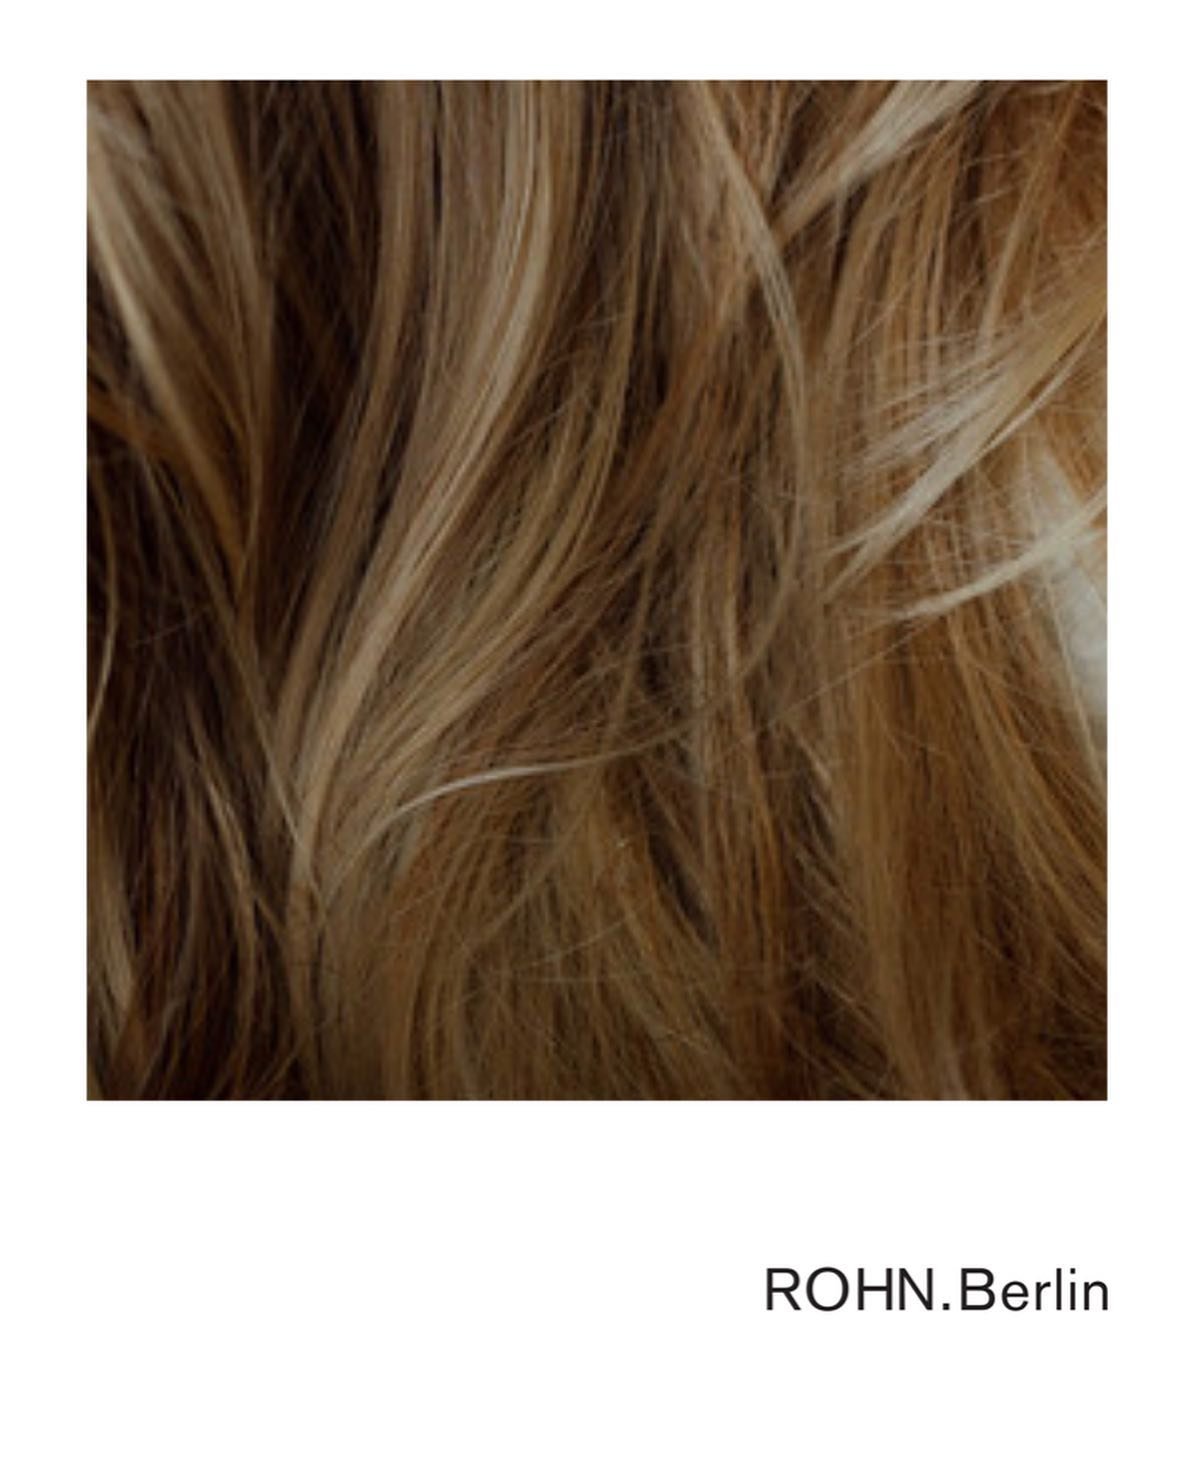 &hellip; weil wir nat&uuml;rlich aussehen Haarfarben lieben

#rohnberlin
#rohnberlinstudio
#berlinhairdresser
#beautifulhairexpert
#hairberlin #babylights #microlights #highlights #blonde #blondehair #blond